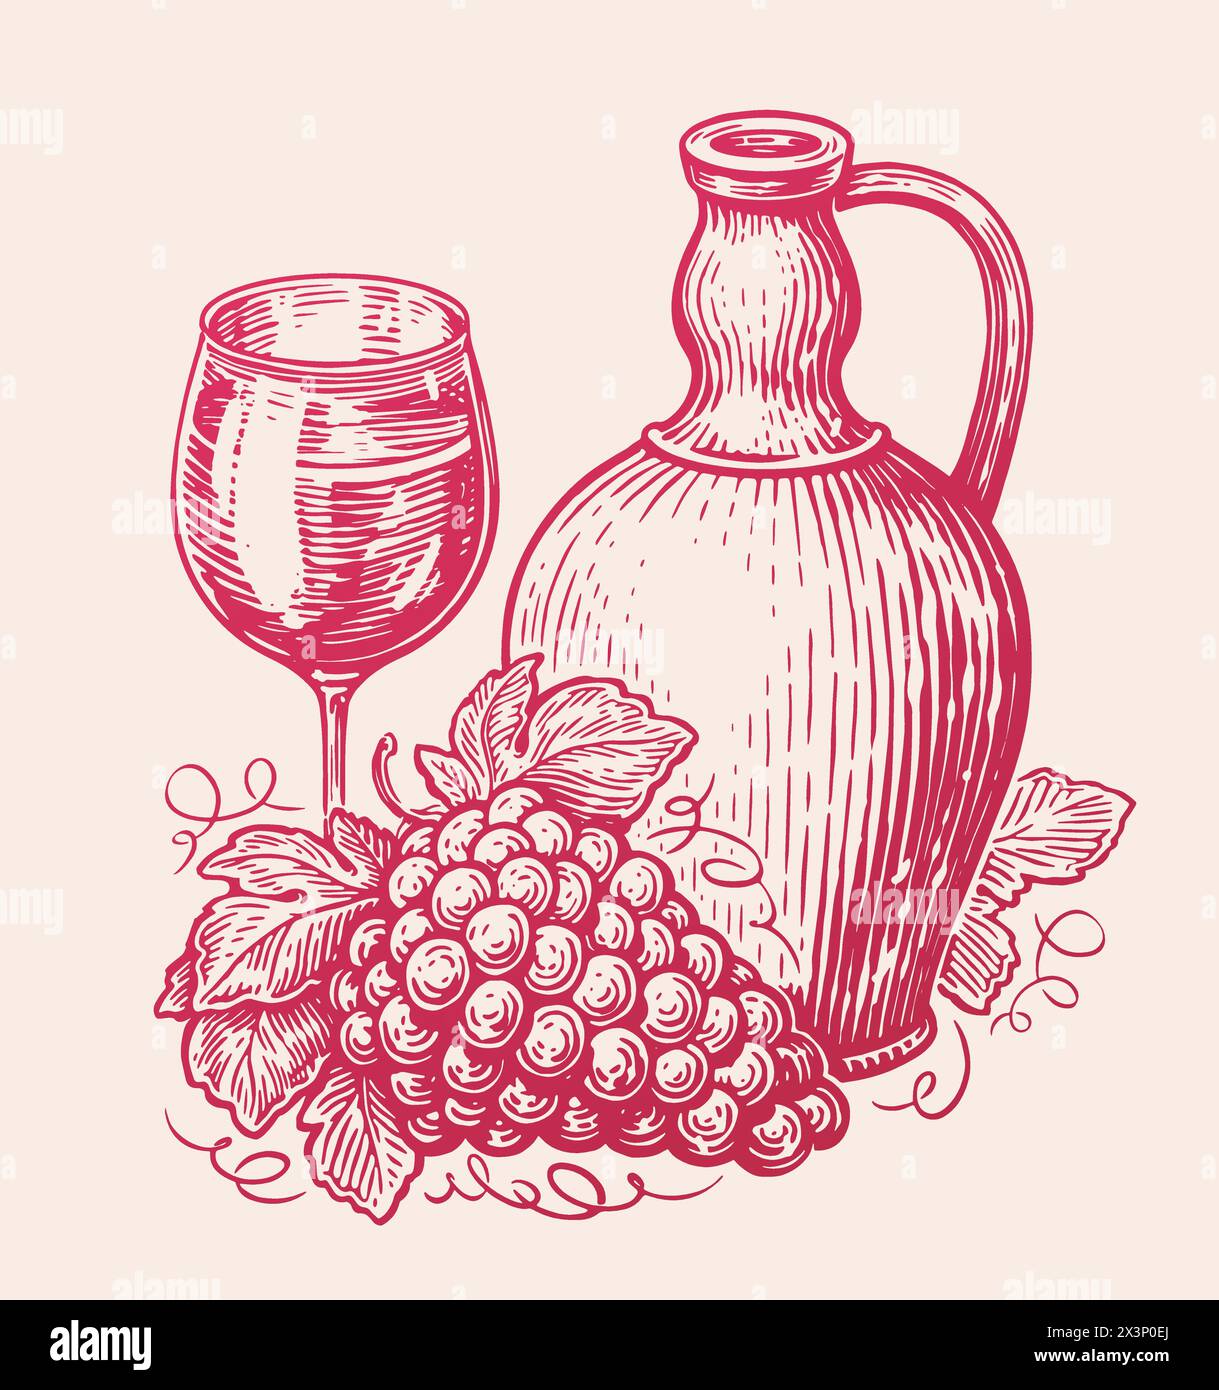 Bicchiere di vino con bicchiere e grappolo di uva. Schizzo di natura morta. Illustrazione vettoriale in stile disegno artistico Illustrazione Vettoriale